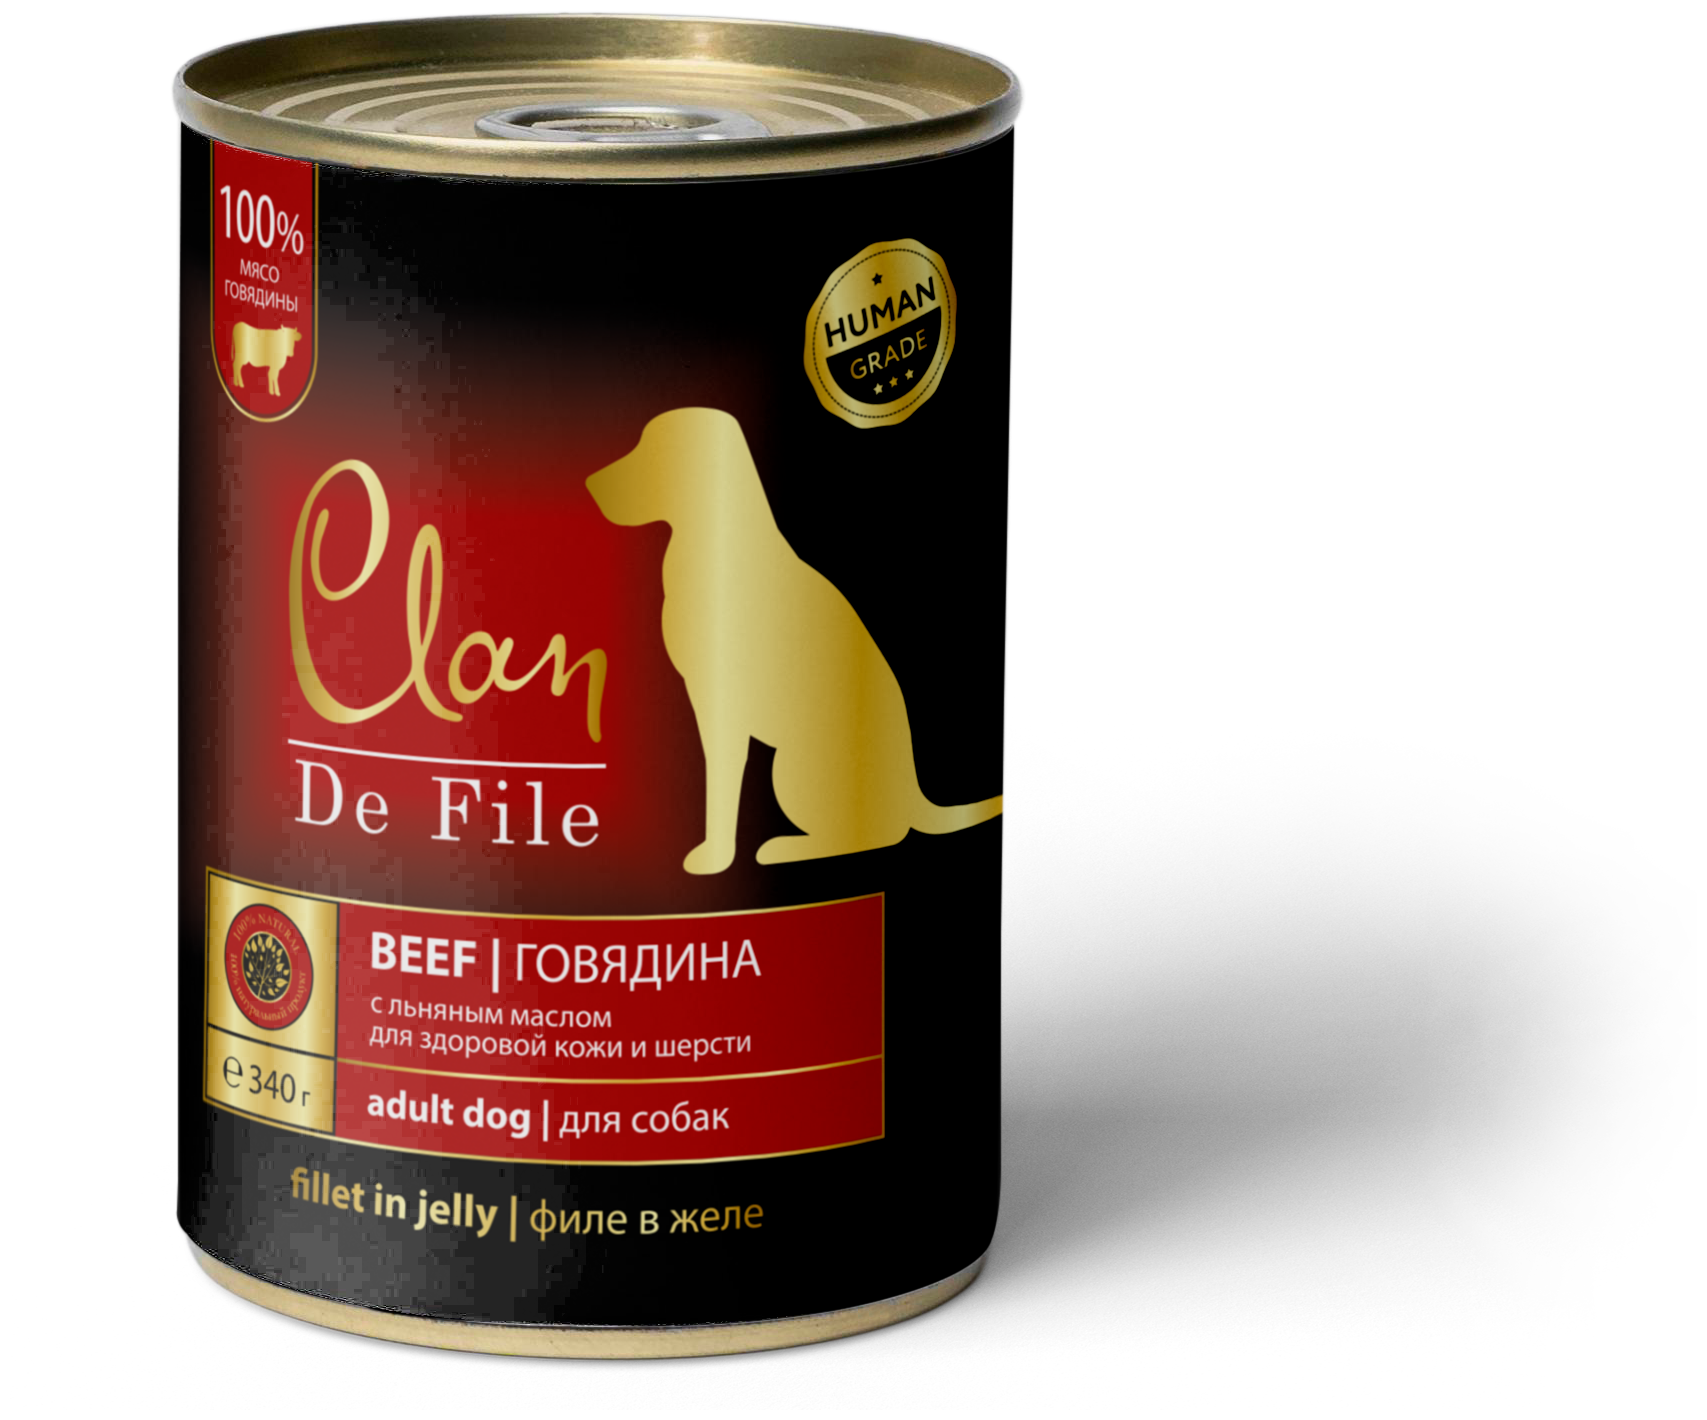 CLAN De File консервы для собак с говядиной, 340г